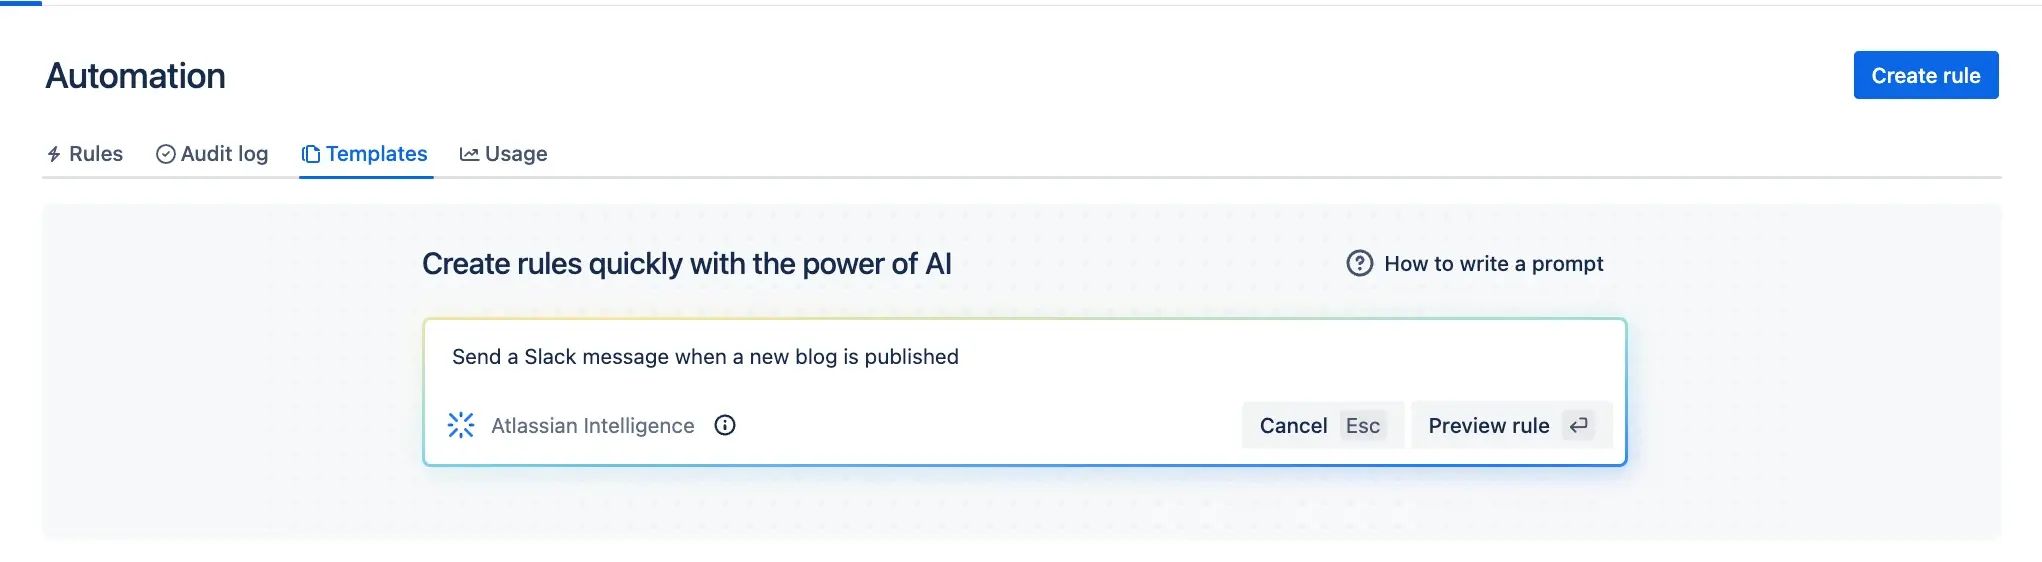 Atlassian AI automation example 1